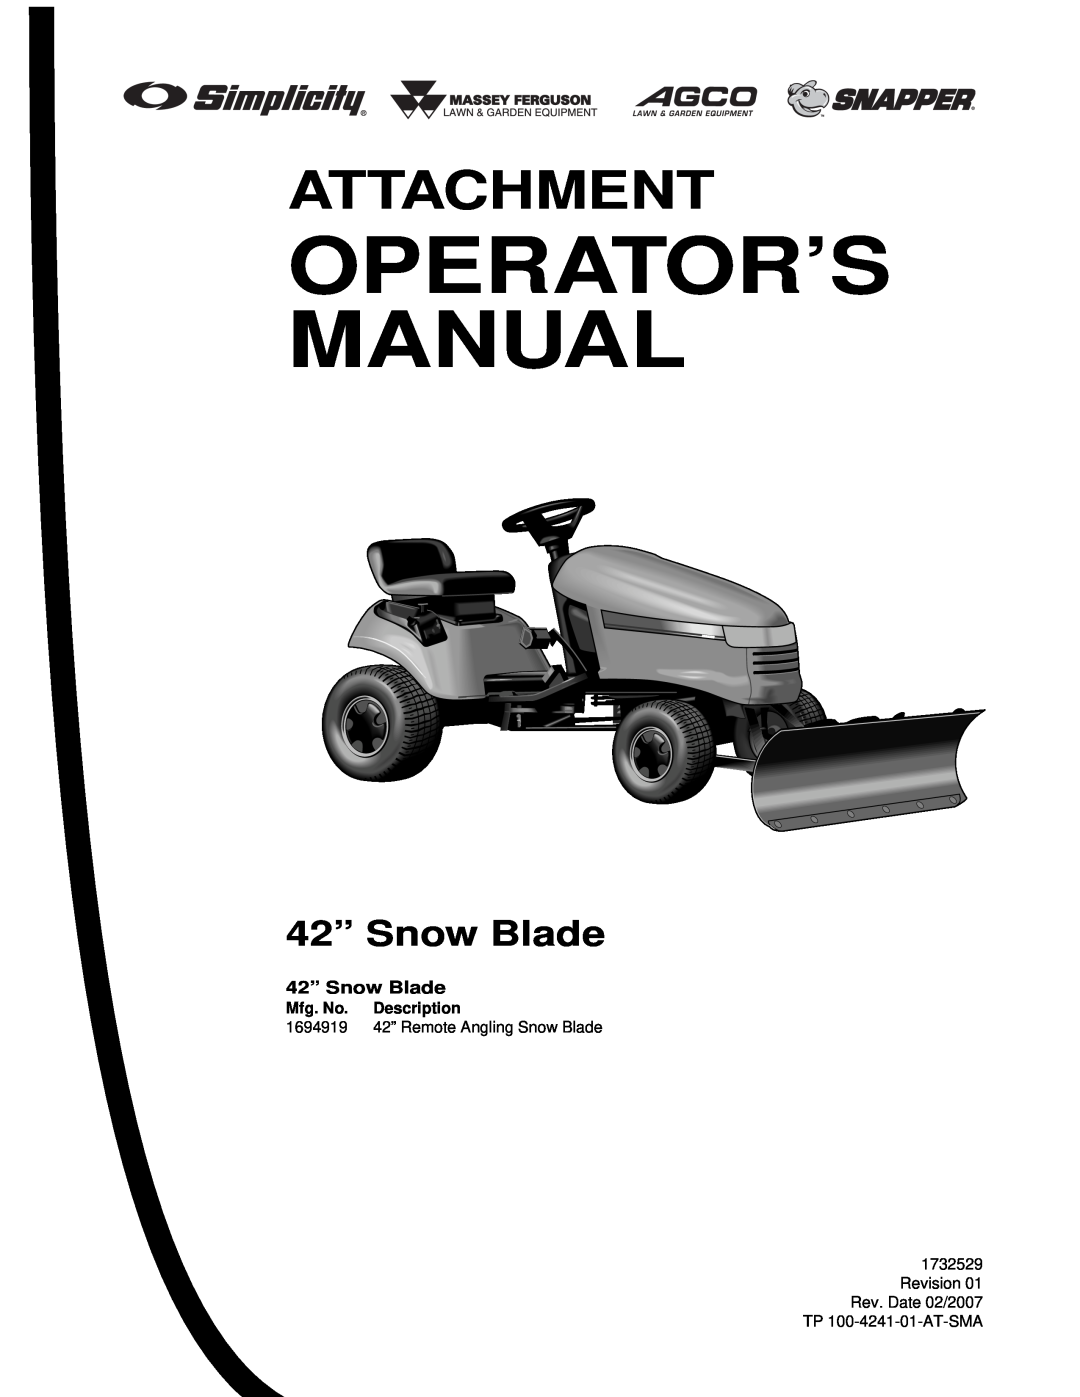 Briggs & Stratton 1694919 manual Operator’S Manual, Attachment, 42” Snow Blade, Mfg. No. Description 